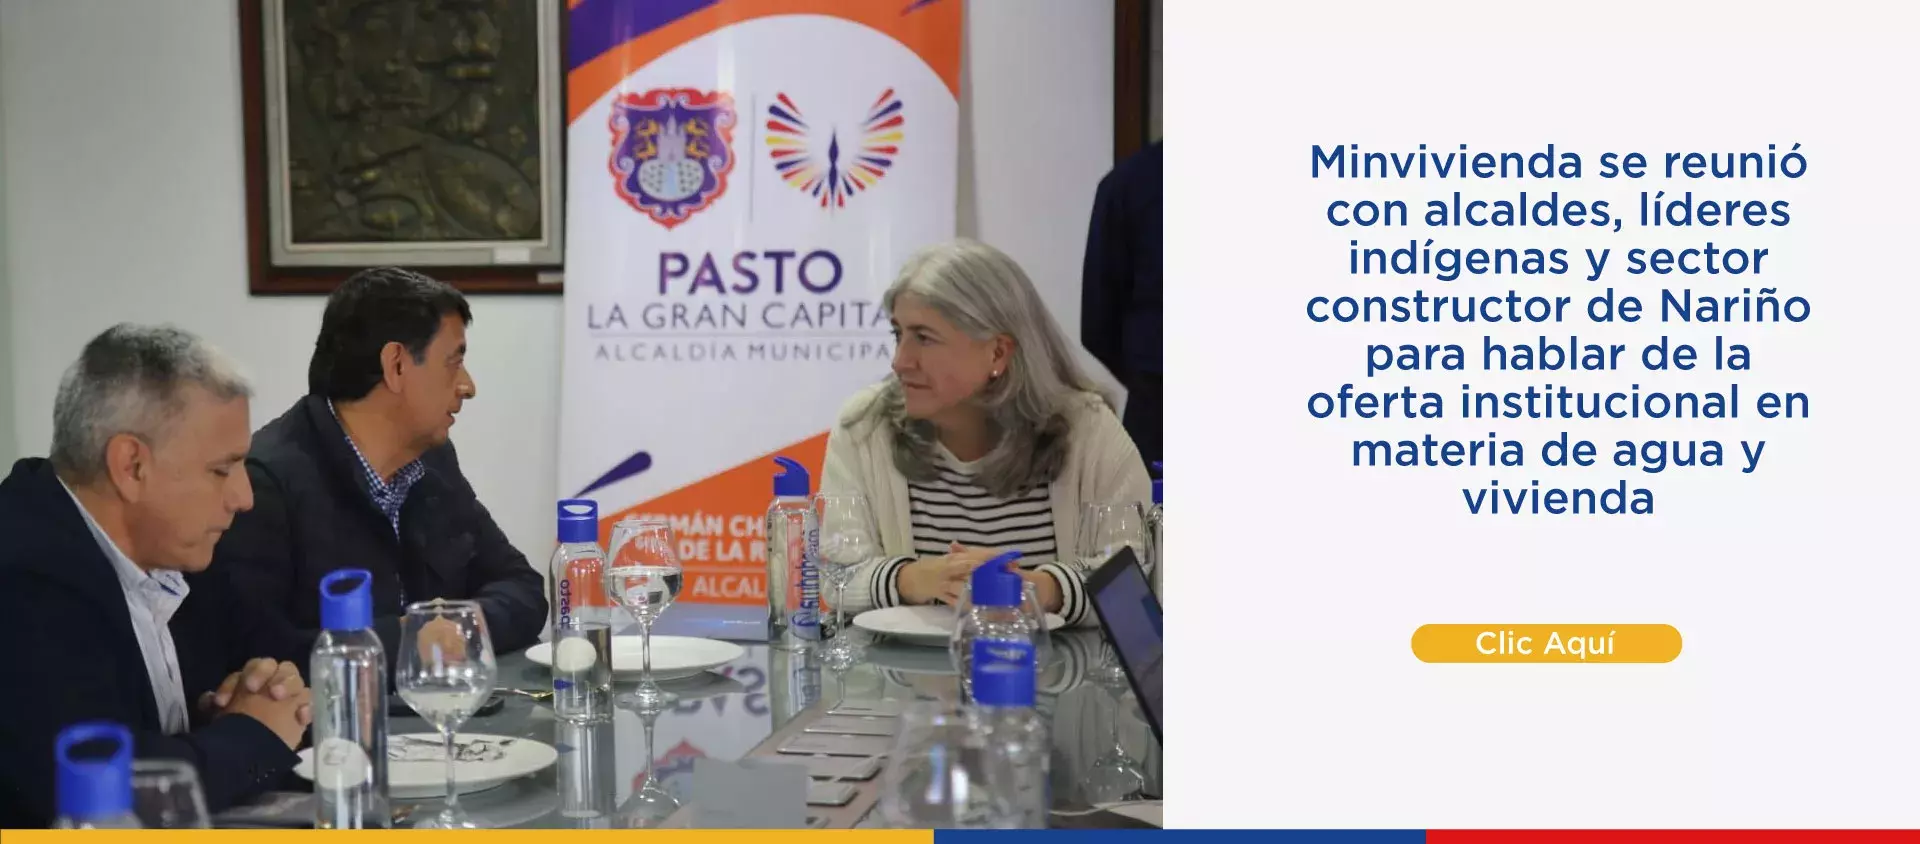 Minvivienda se reunió con alcaldes, líderes indígenas y sector constructor de Nariño para hablar de la oferta institucional en materia de agua y vivienda